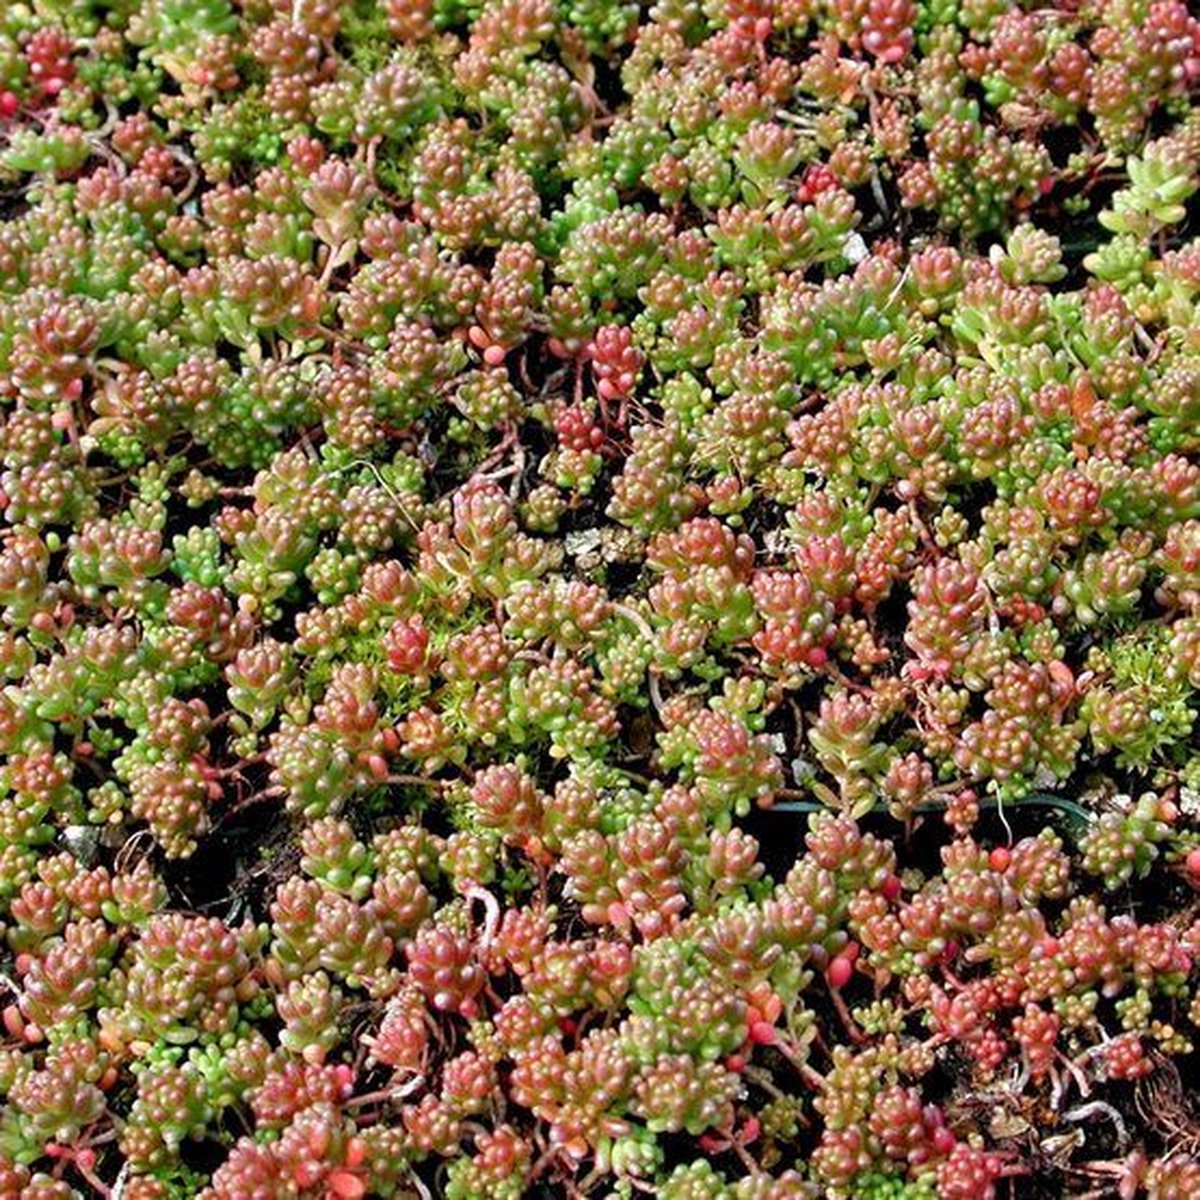 100 x Vetkruid of Muurpeper Rood|Groen - Bodembedekker Wintergroen - Sedum album 'Coral Carpet' in 9x9cm pot met hoogte 5-10cm